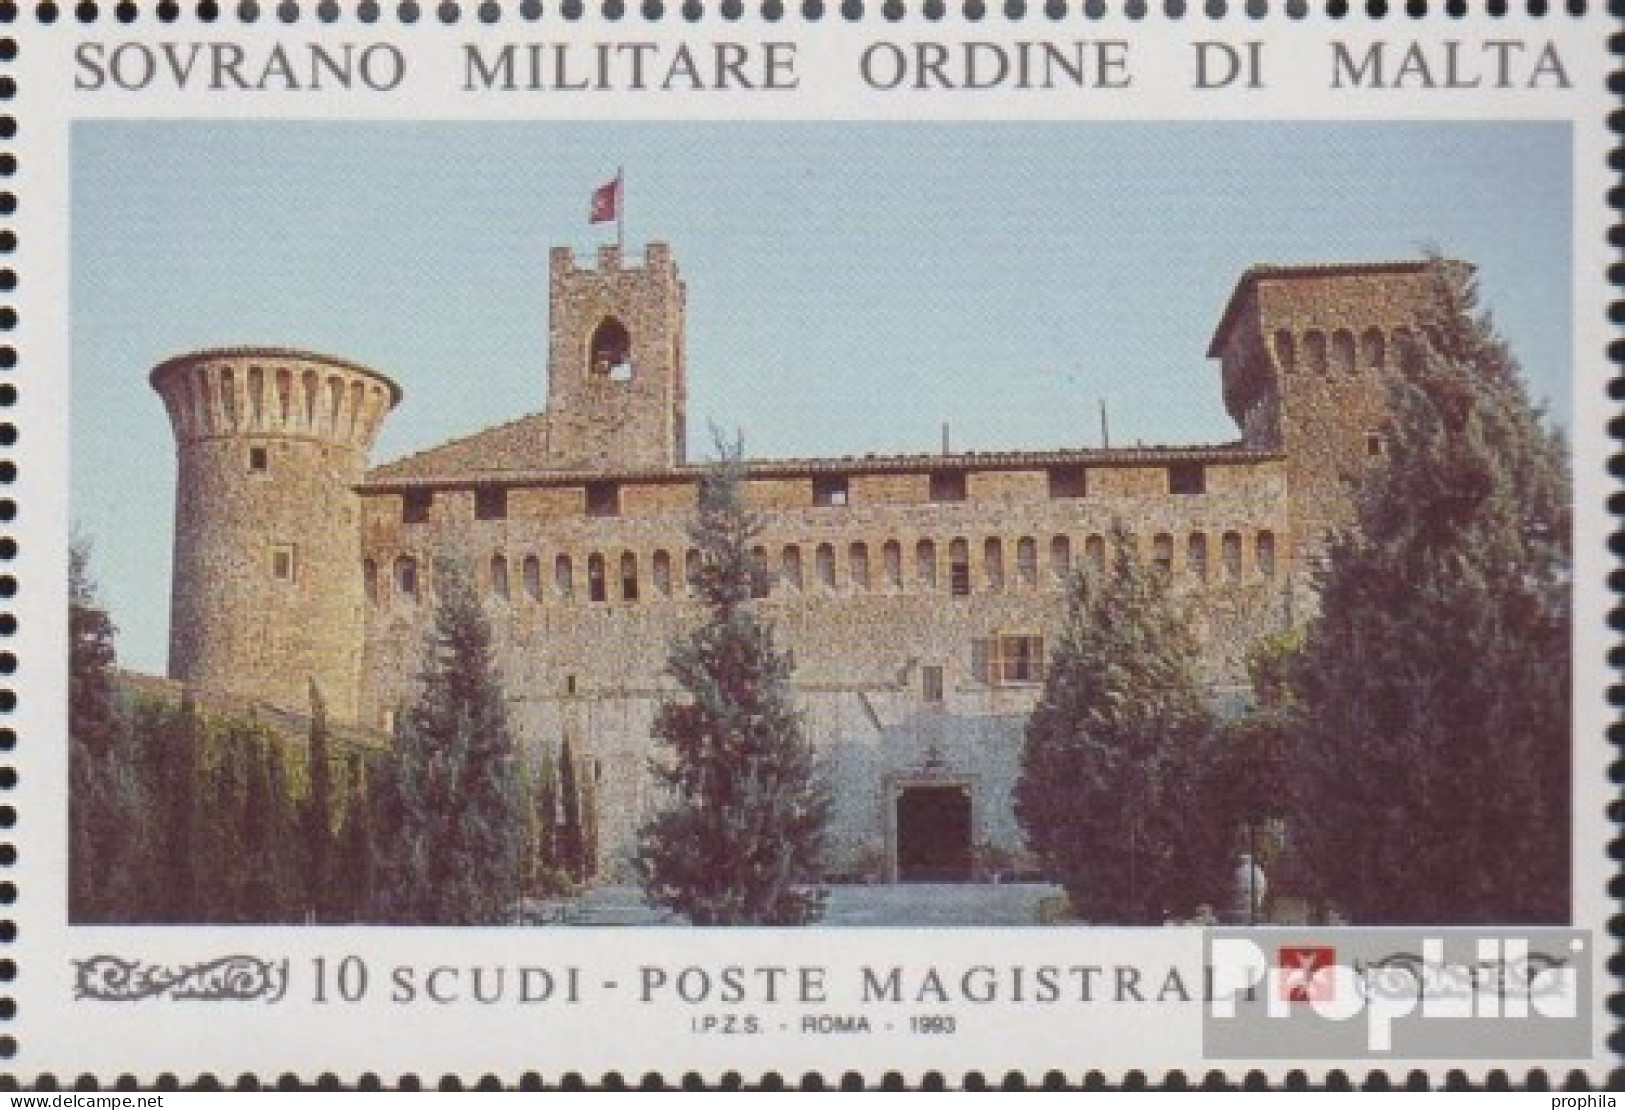 Malteserorden (SMOM) Kat-Nr.: 533 (kompl.Ausg.) Postfrisch 1993 Residenz - Malta (Orden Von)